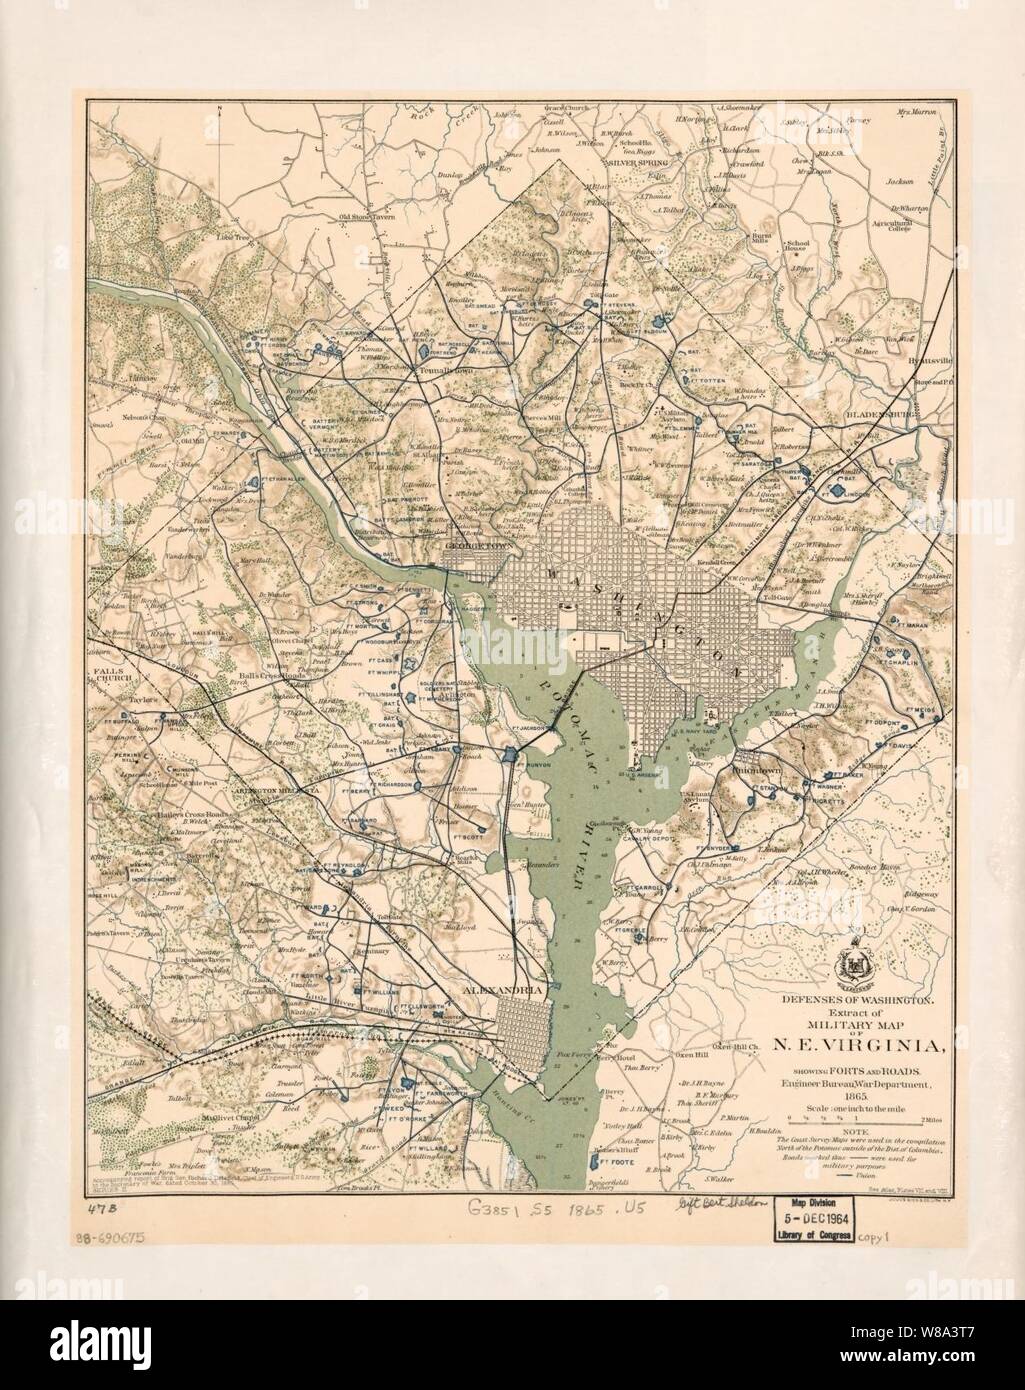 Défenses de Washington, l'extrait de la carte militaire de N.E. Virginie - montrant des forts et des routes principales Banque D'Images